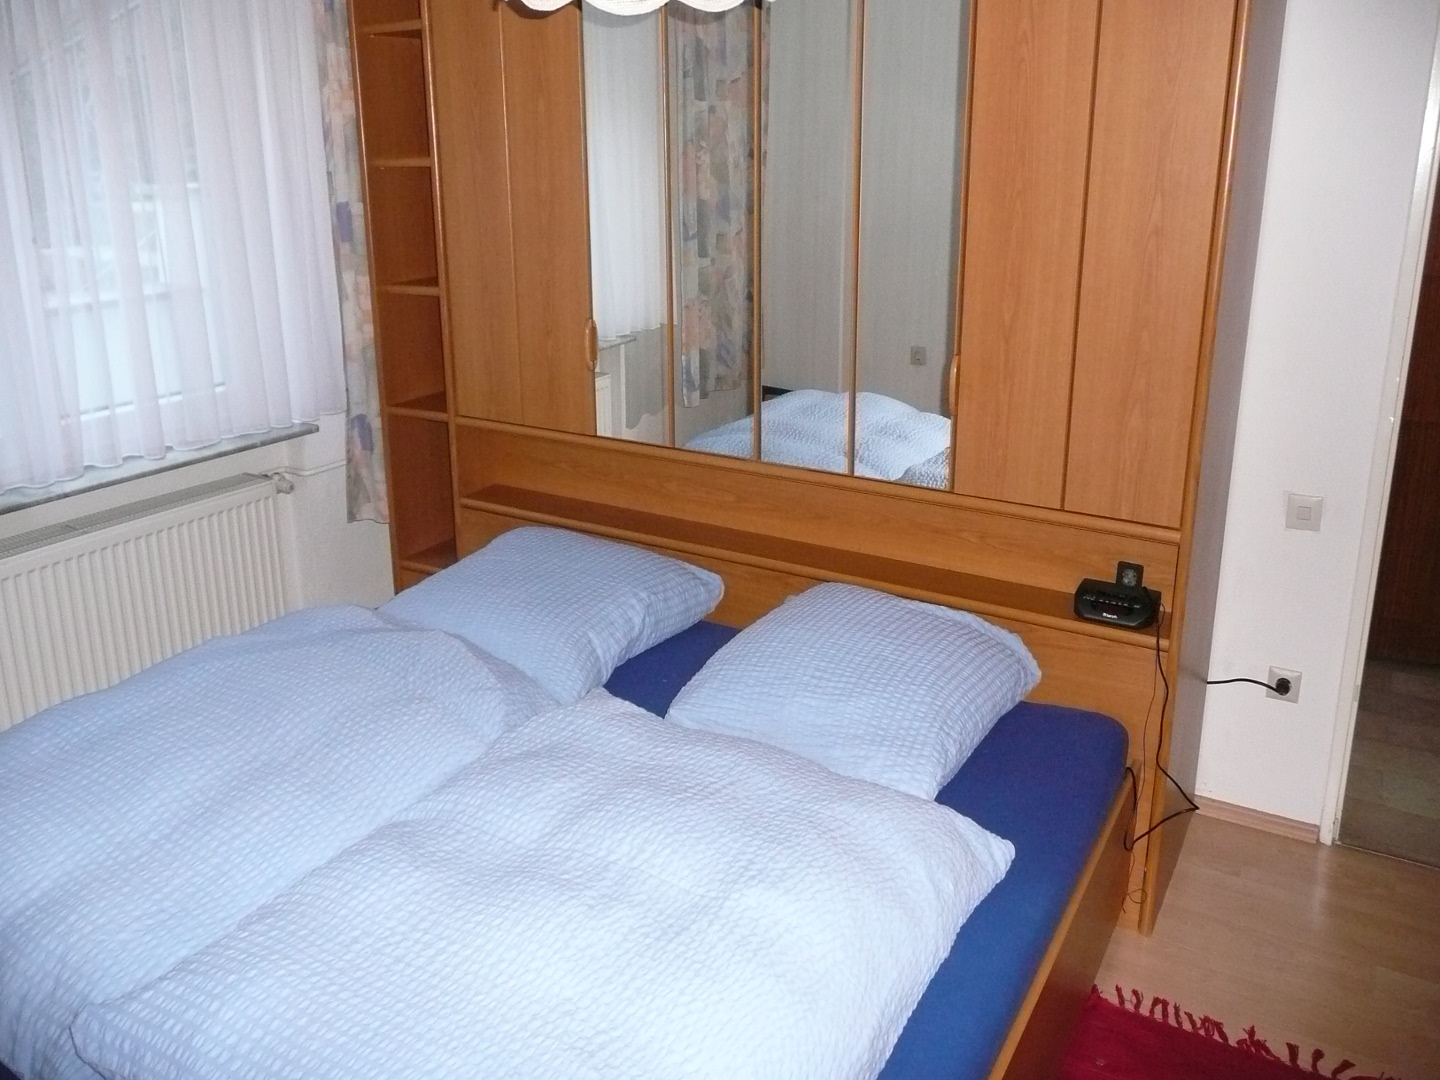 Zimmer1 Schlafzimmer mit 2x2m Bett